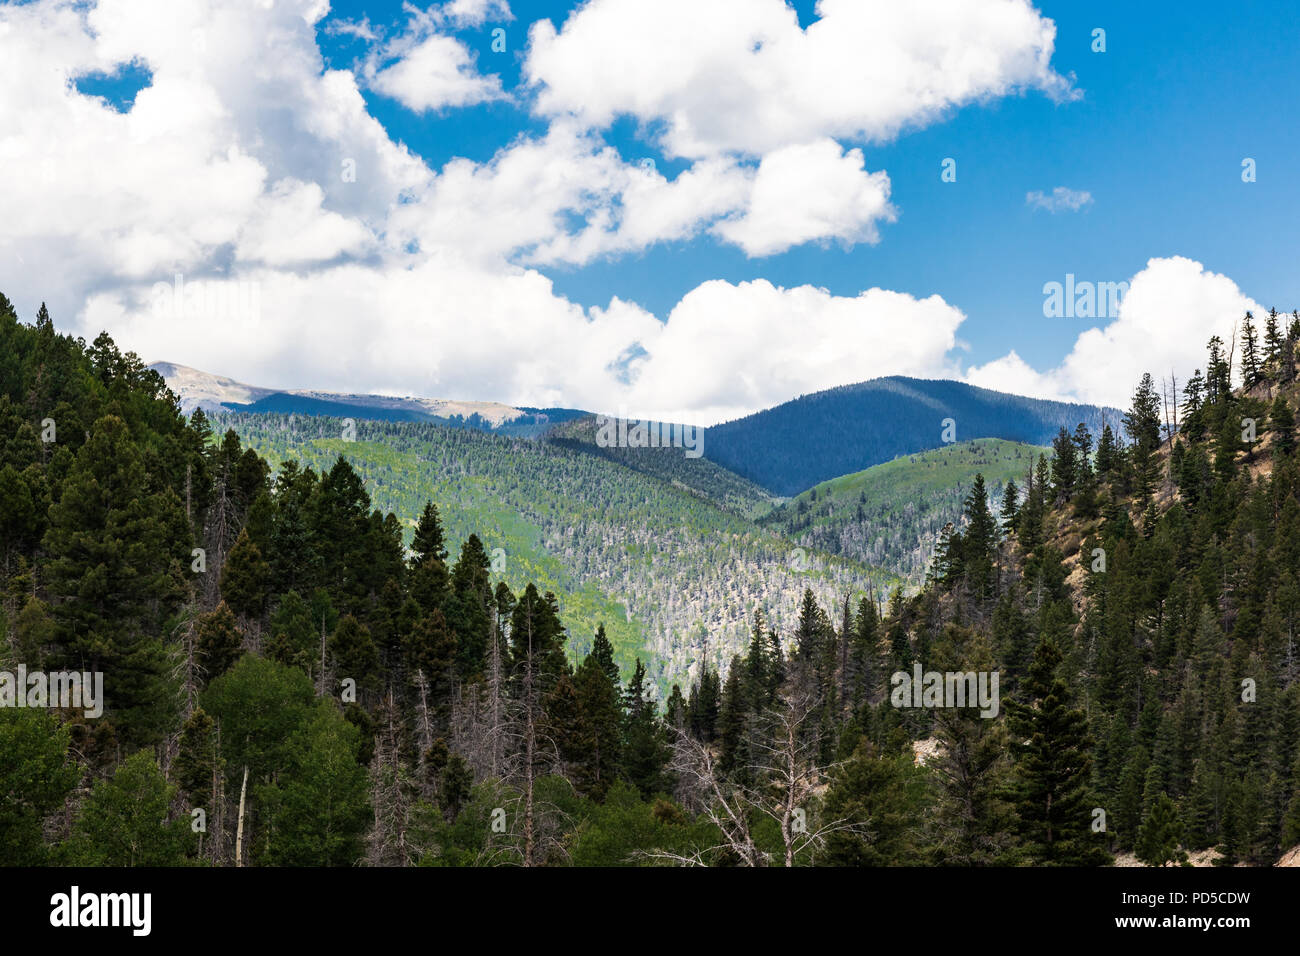 Walzen, überlappenden grünen Bergen, V-förmig, mit weißen, geschwollene Wolken und blauer Himmel. Gut für den Hintergrund. Stockfoto